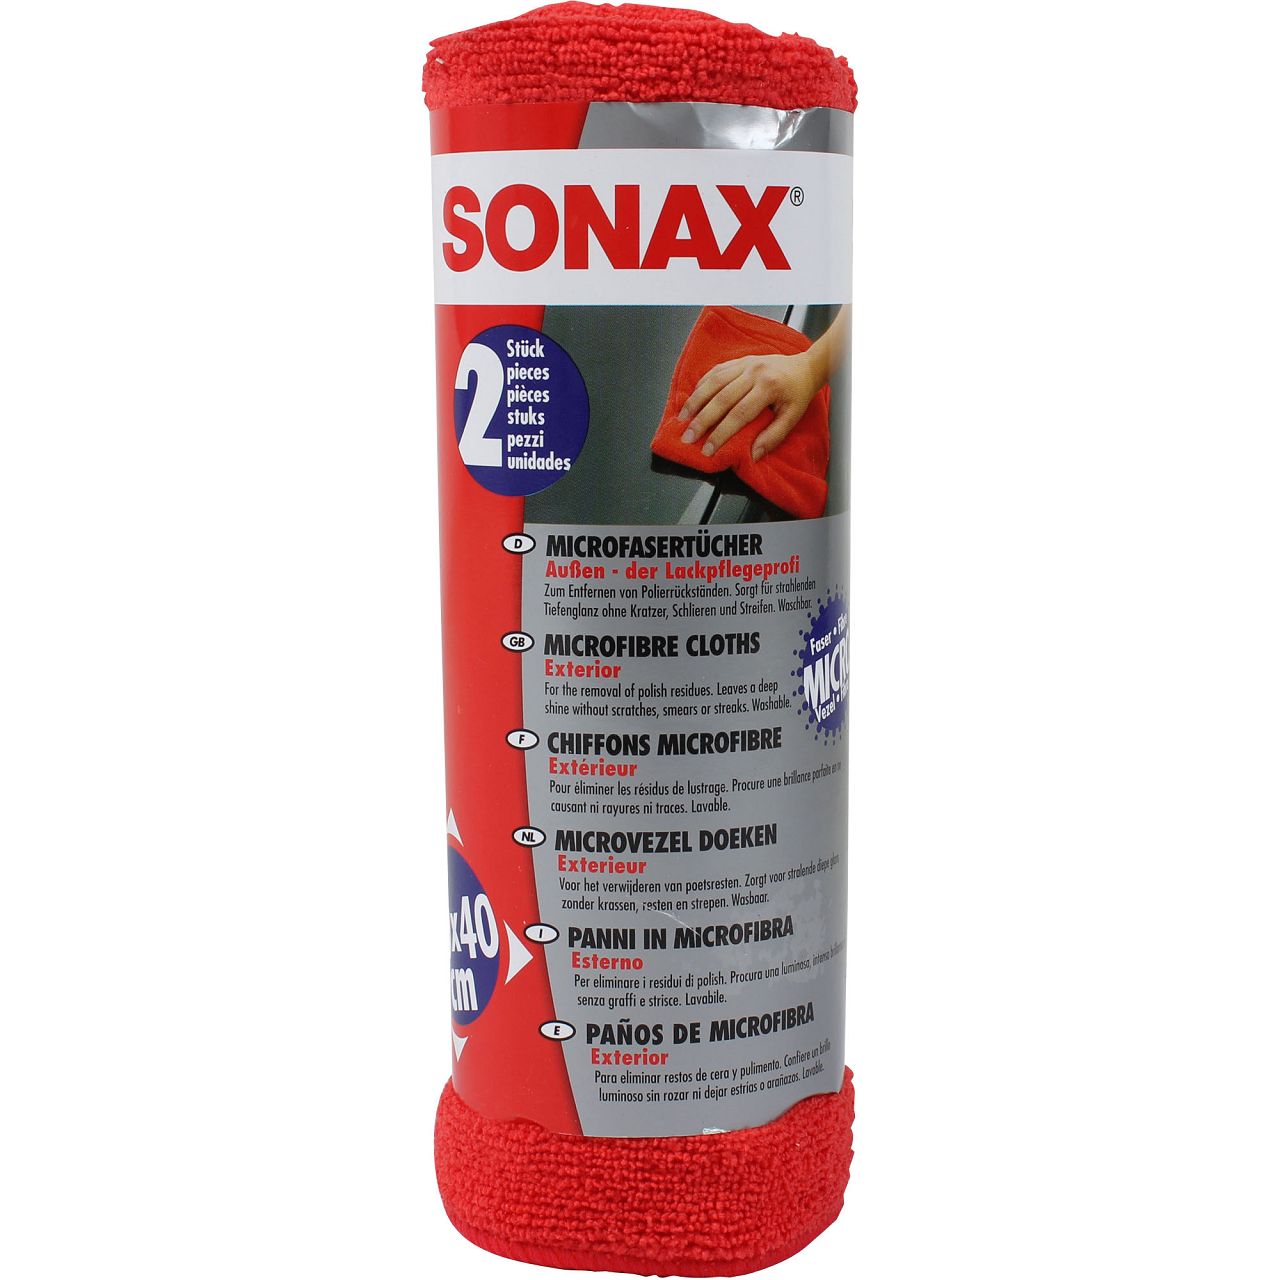 SONAX MicrofaserTücher Außen - der Lackpflegeprofi 2 Stück 416241